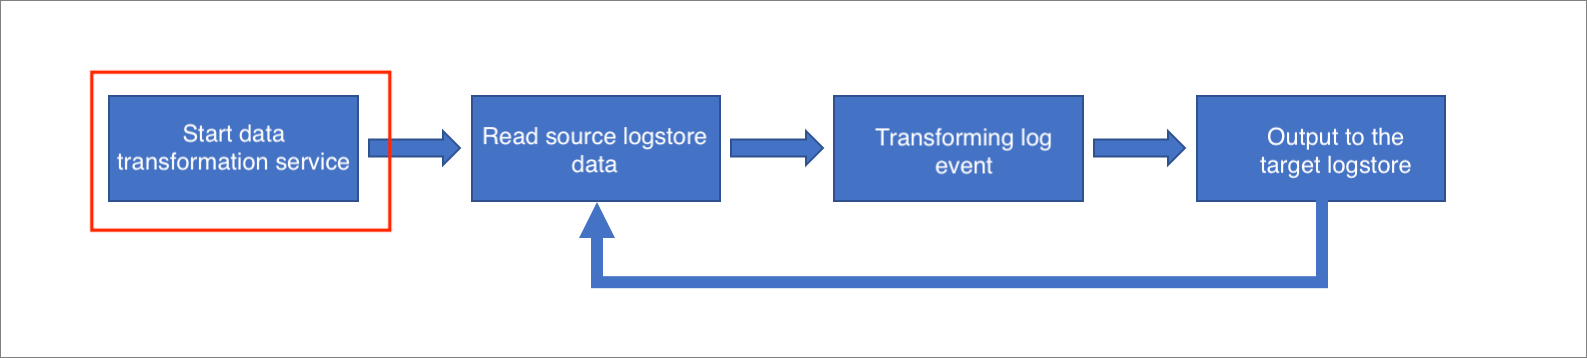 Start the data transformation engine